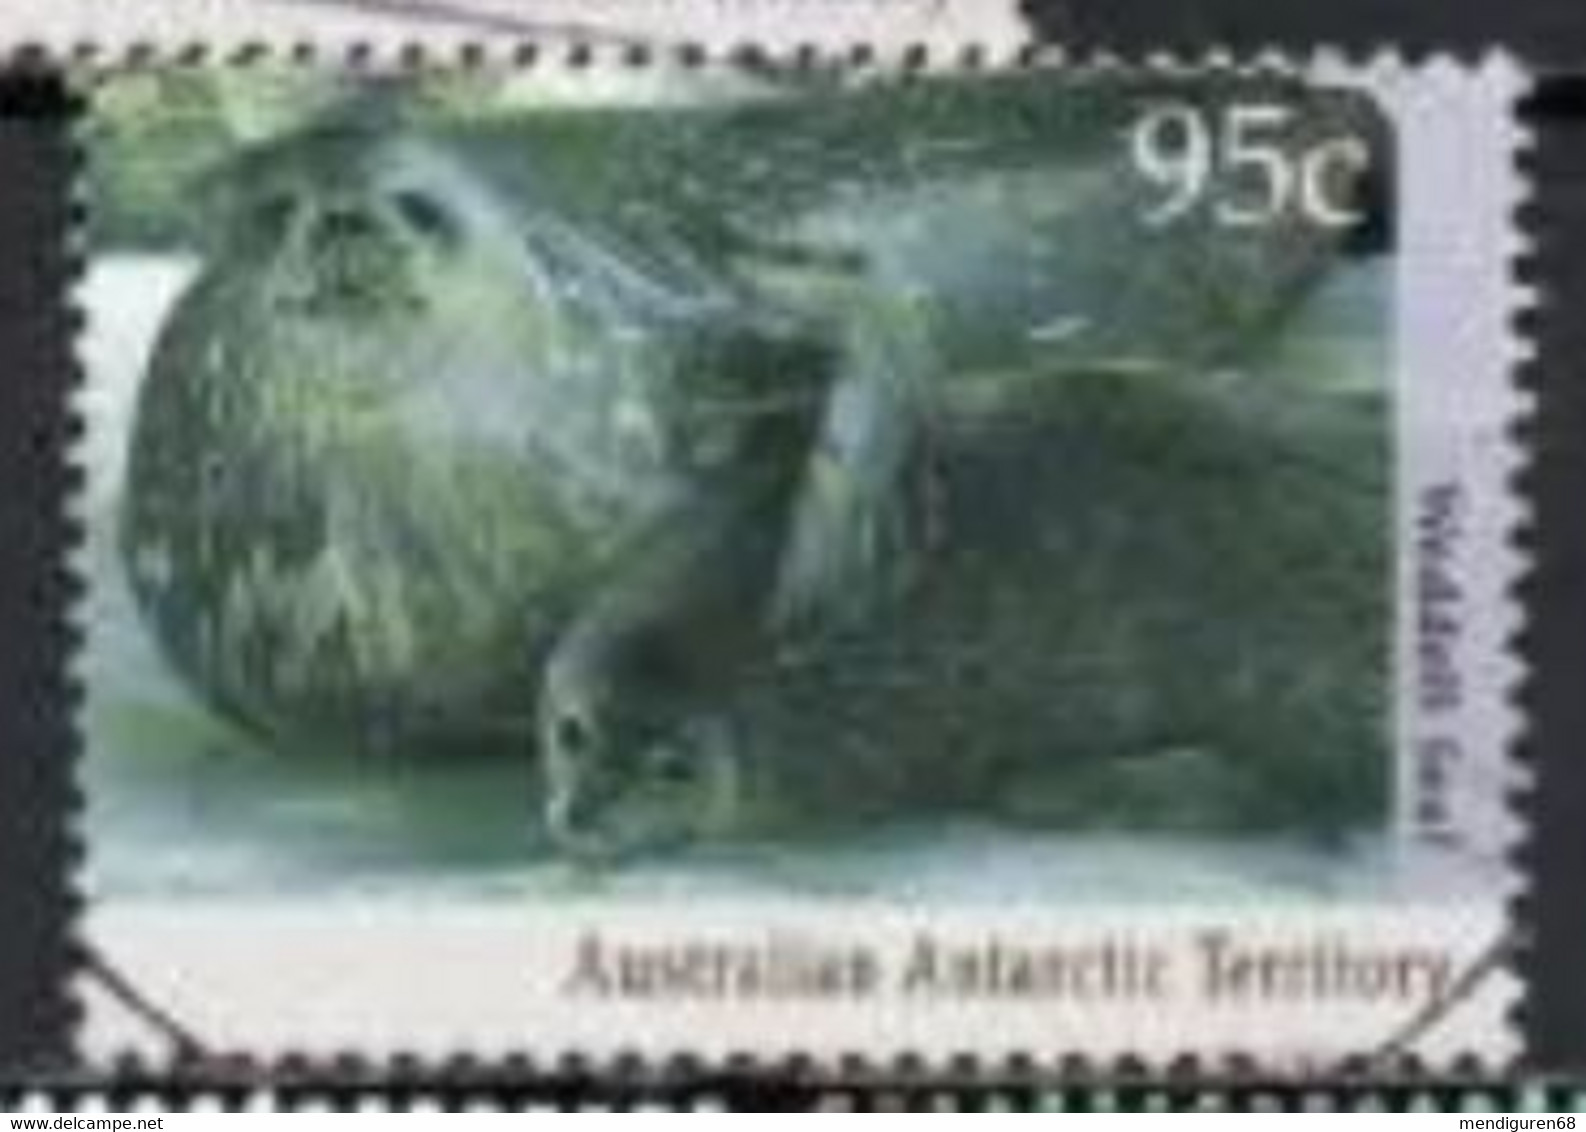 AUSTRALIA ANTARTIC TERRITORY 1992 WEDDELL SEAL USED MI AQ 93 SC AQ L86 YT AQ 93 SG AQ 93 - Used Stamps